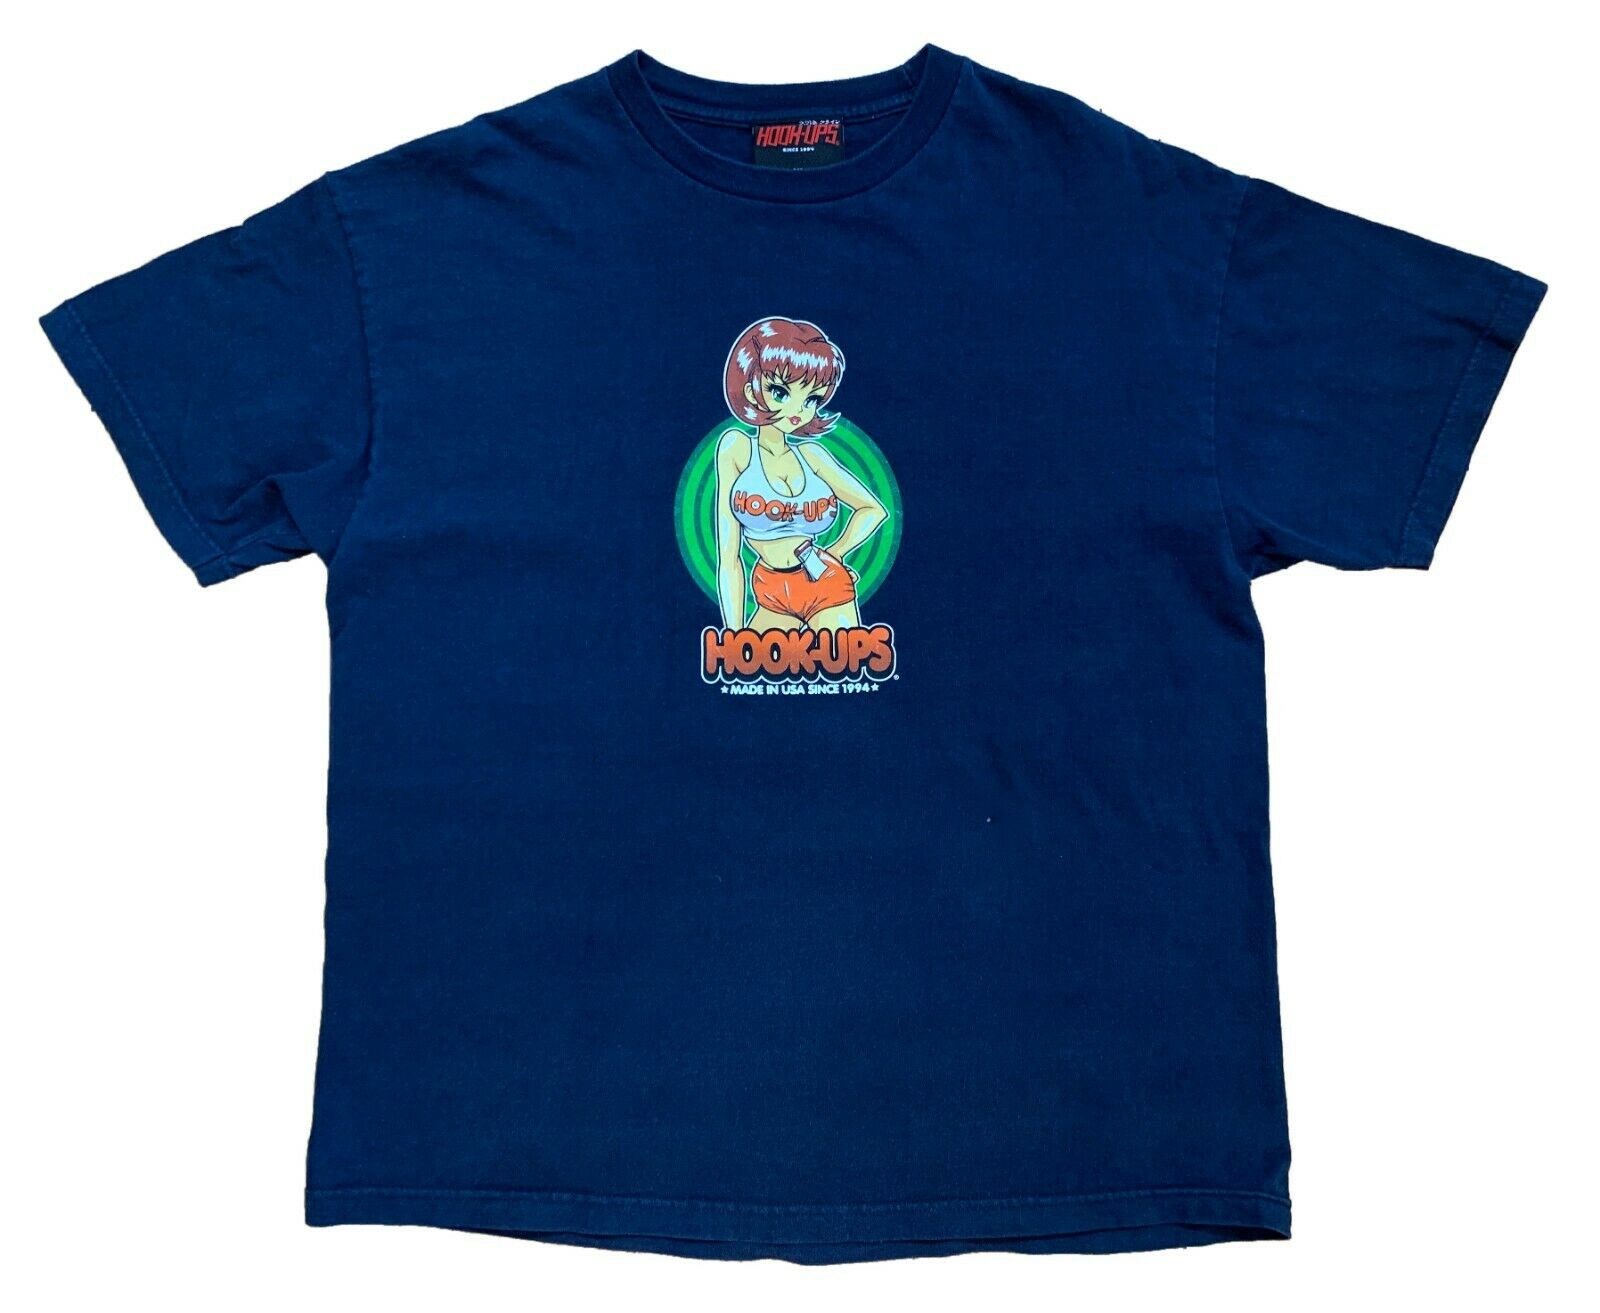 HOOK-UPS SKATEBOARD SOFT Serve Girl T-Shirt S-4XL $25.99 - PicClick